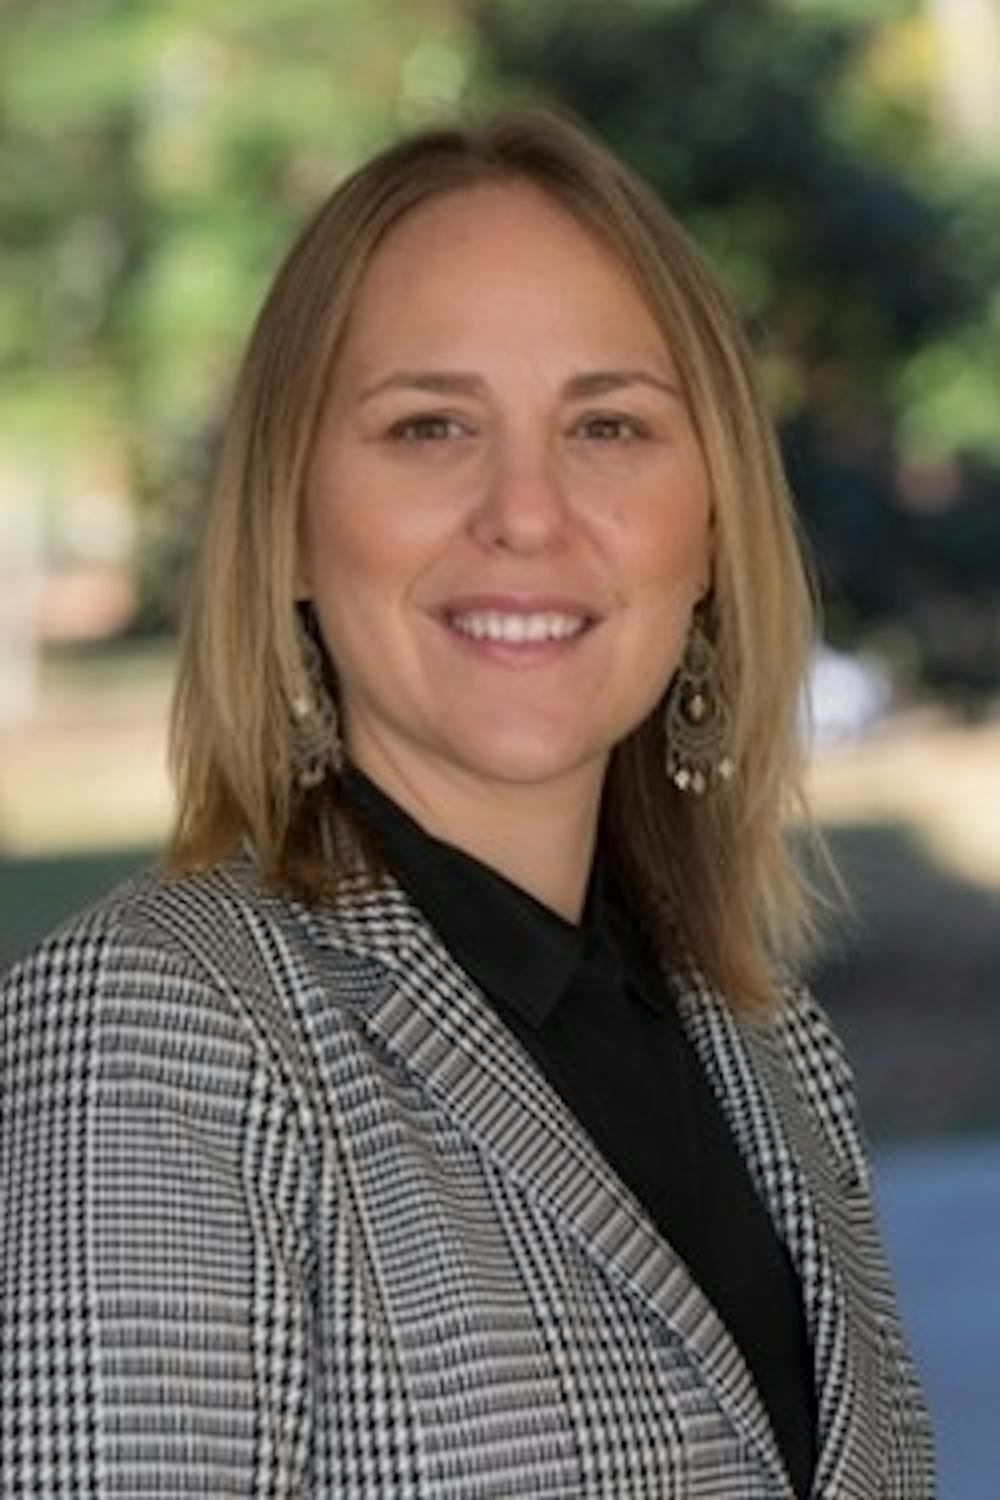 Kimberly Moore began her tenure at Miami in June 2018.